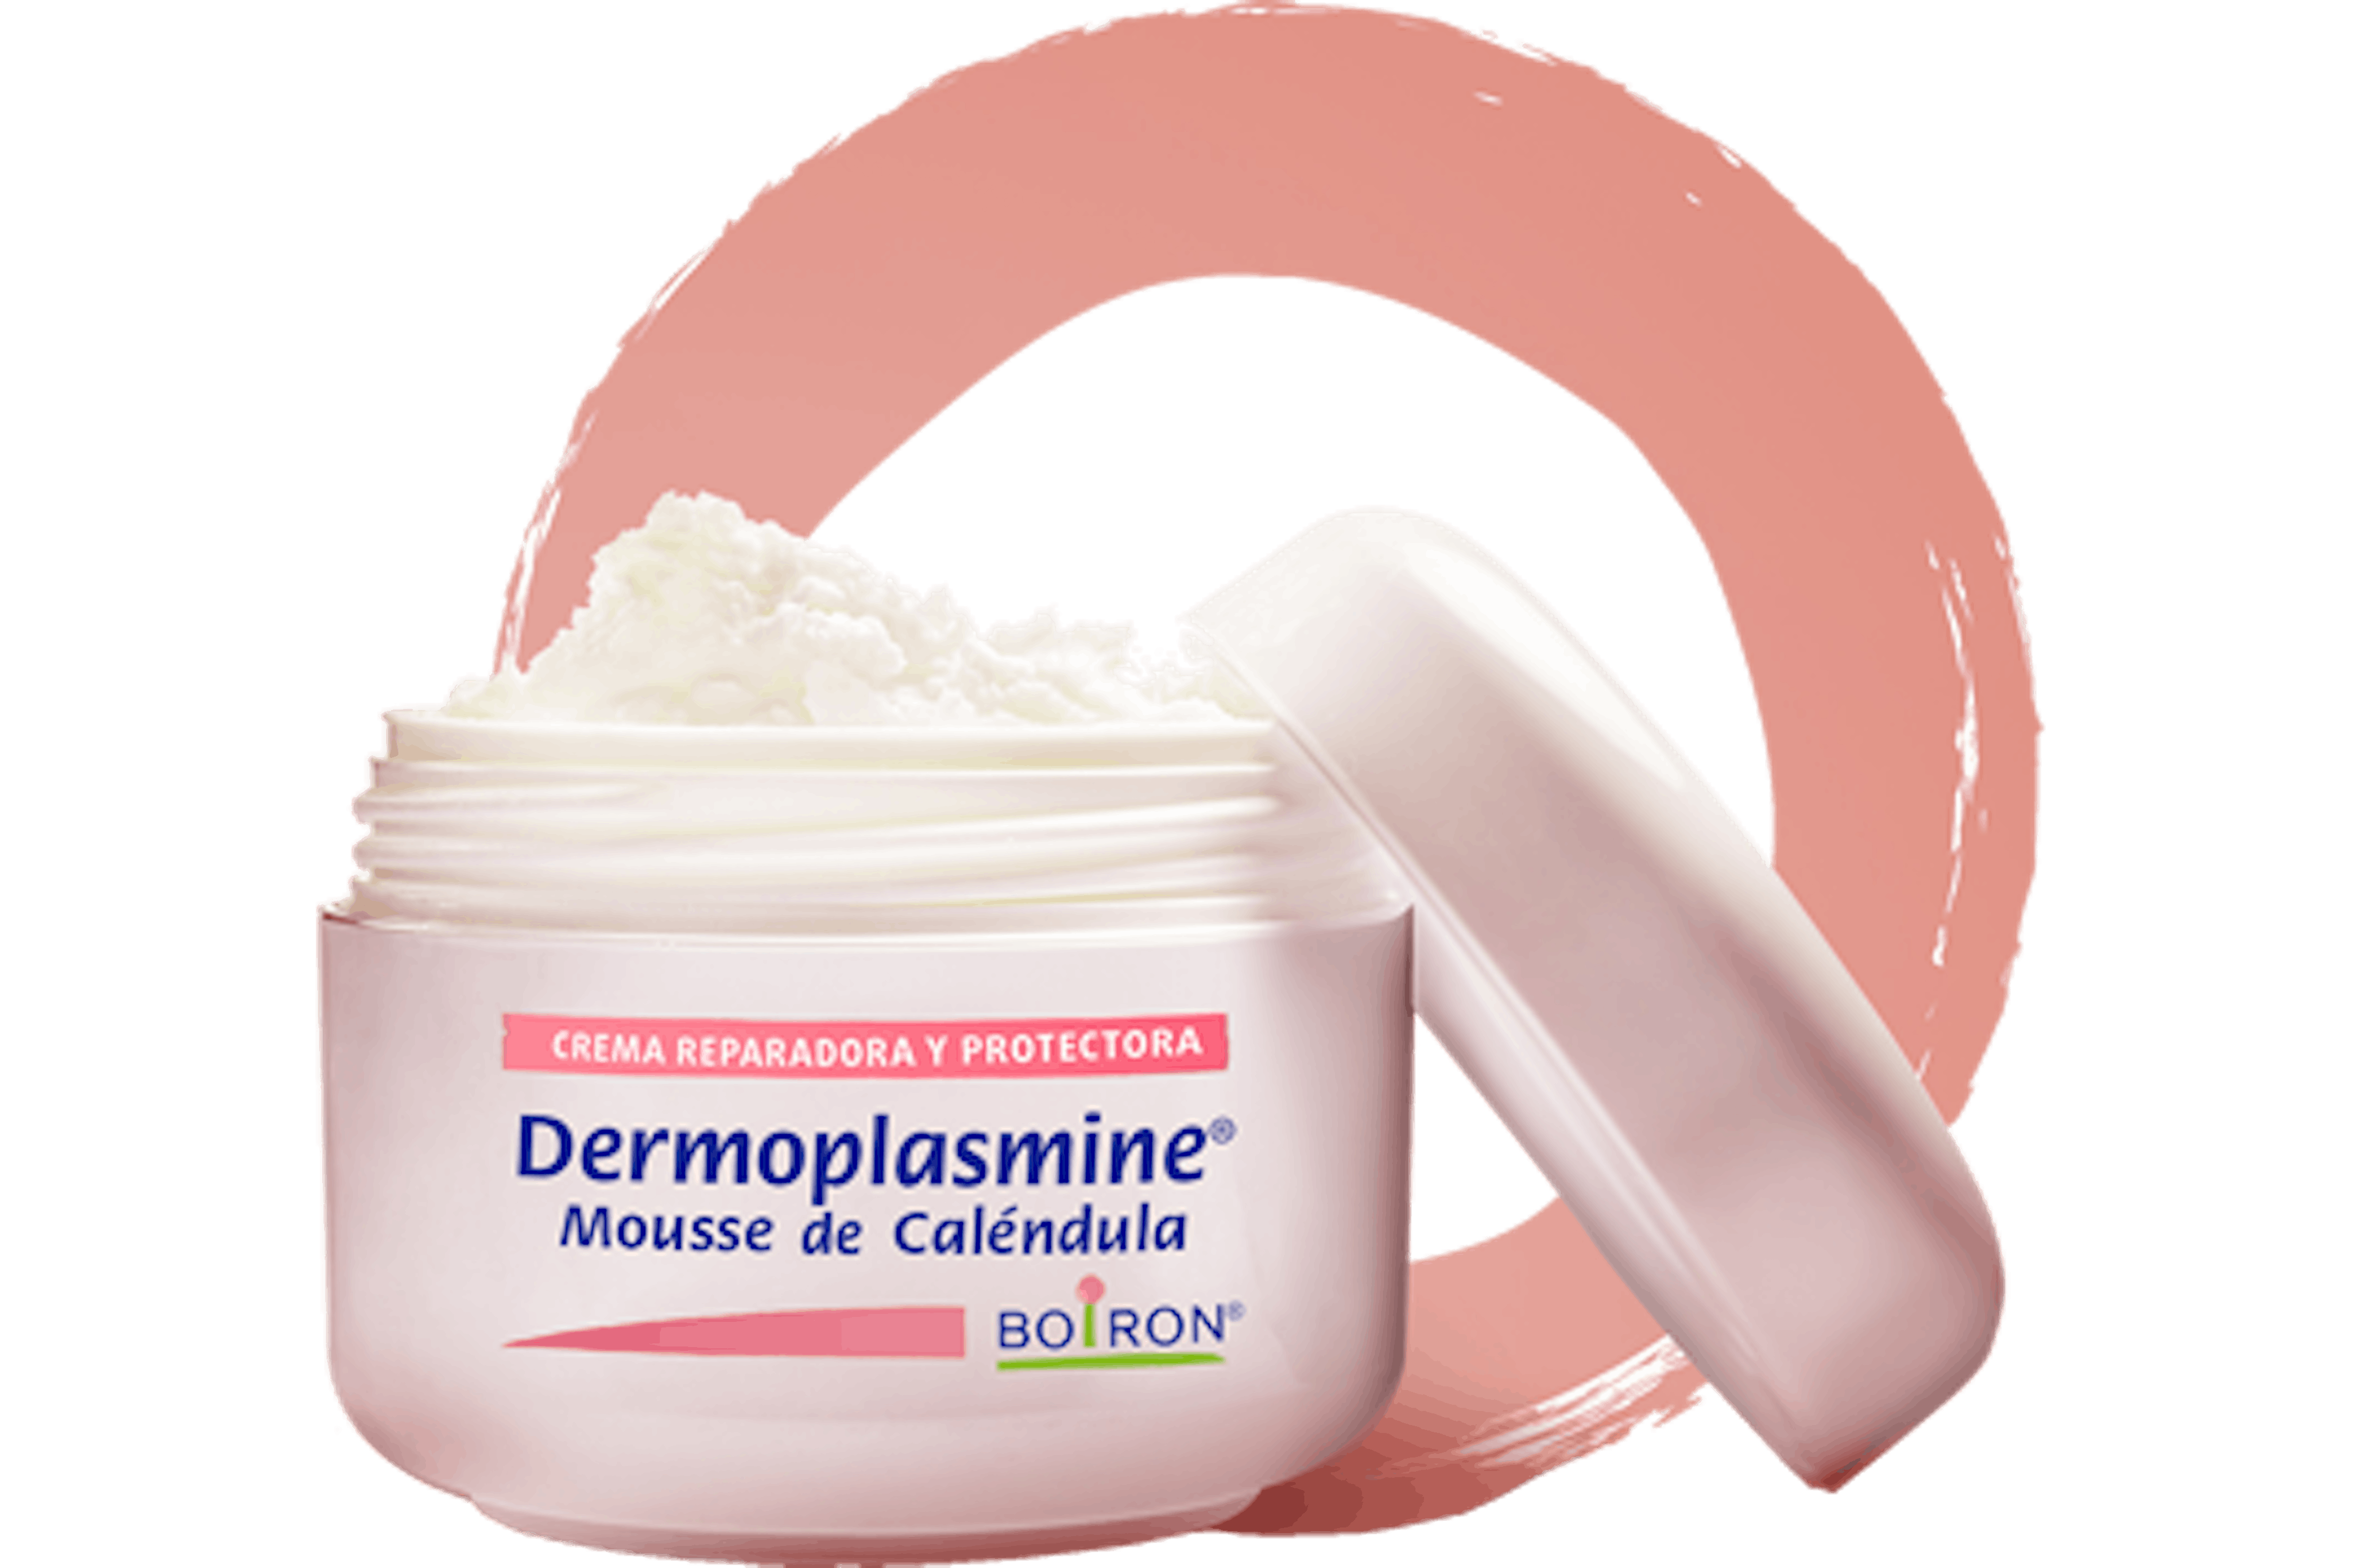 Dermoplasmine® mousse de Caléndula